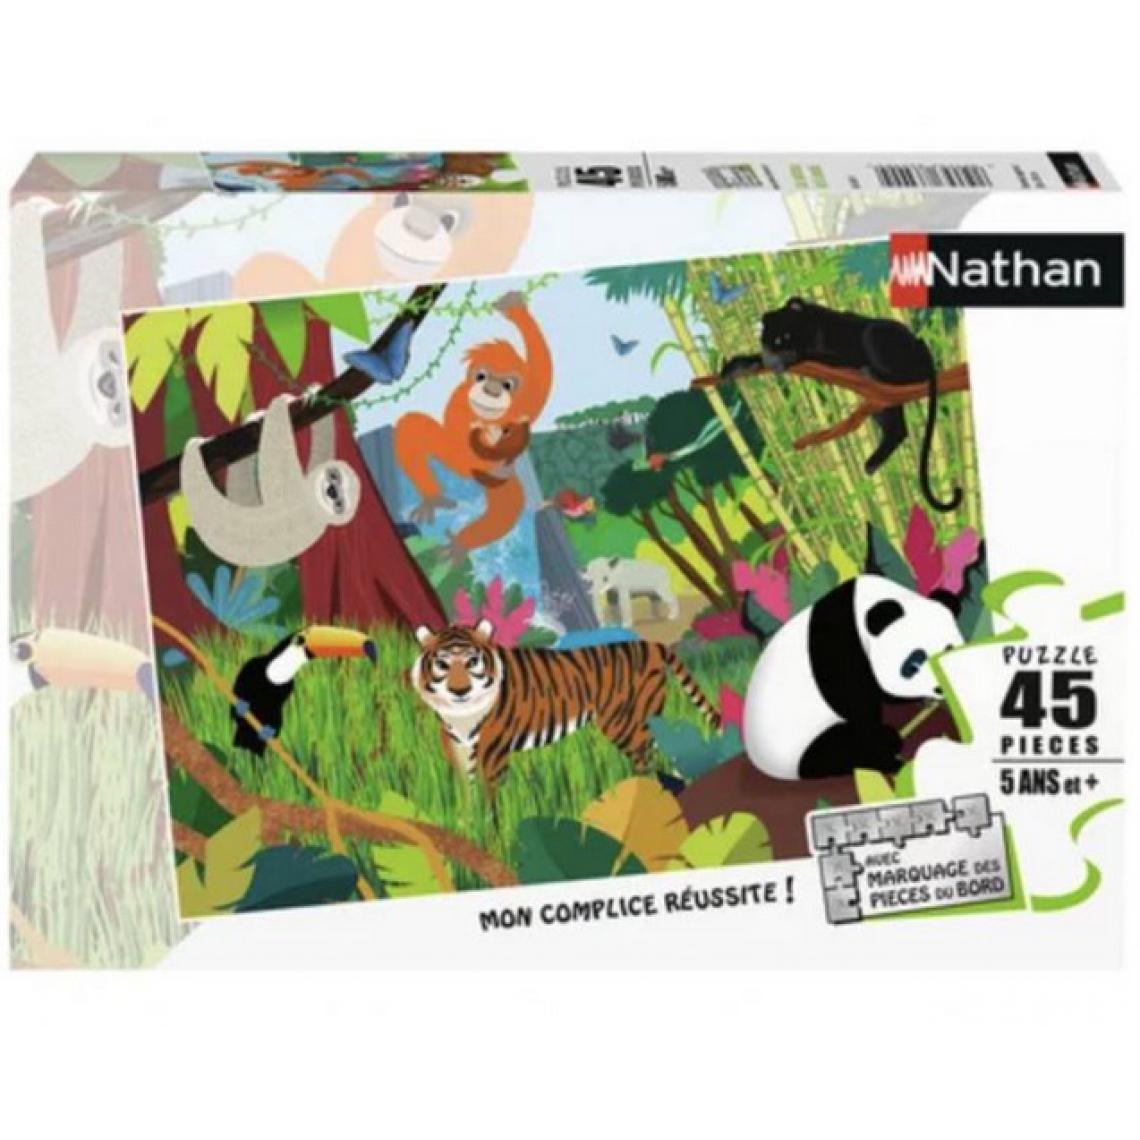 Nathan - Puzzle Les animaux de la jungle 45 pieces - Animaux